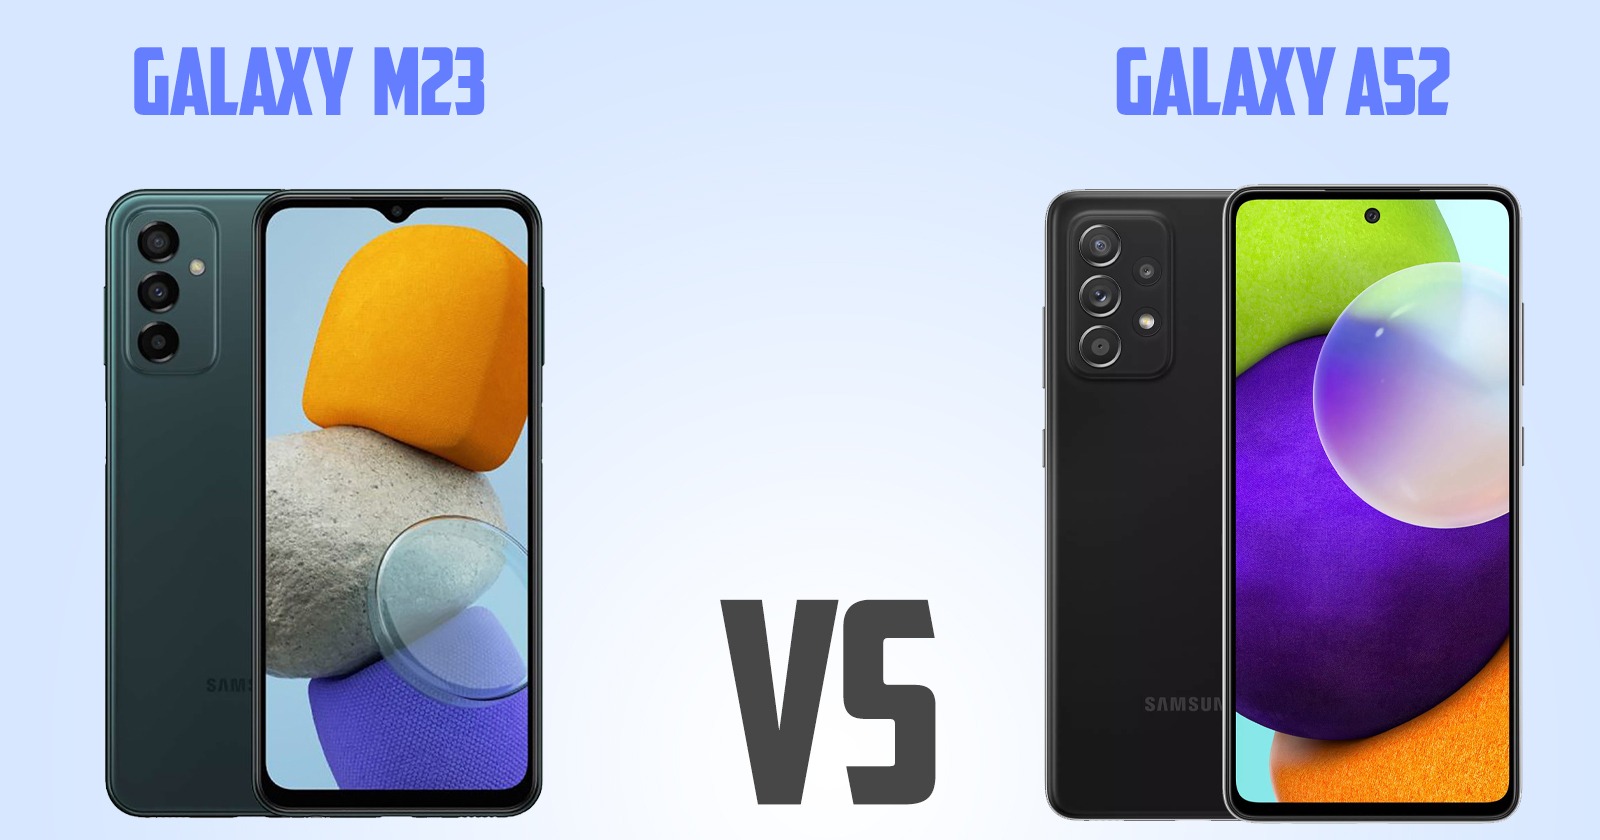 Samsung Galaxy A52 vs Samsung Galaxy M23 [ Full Comparison ]